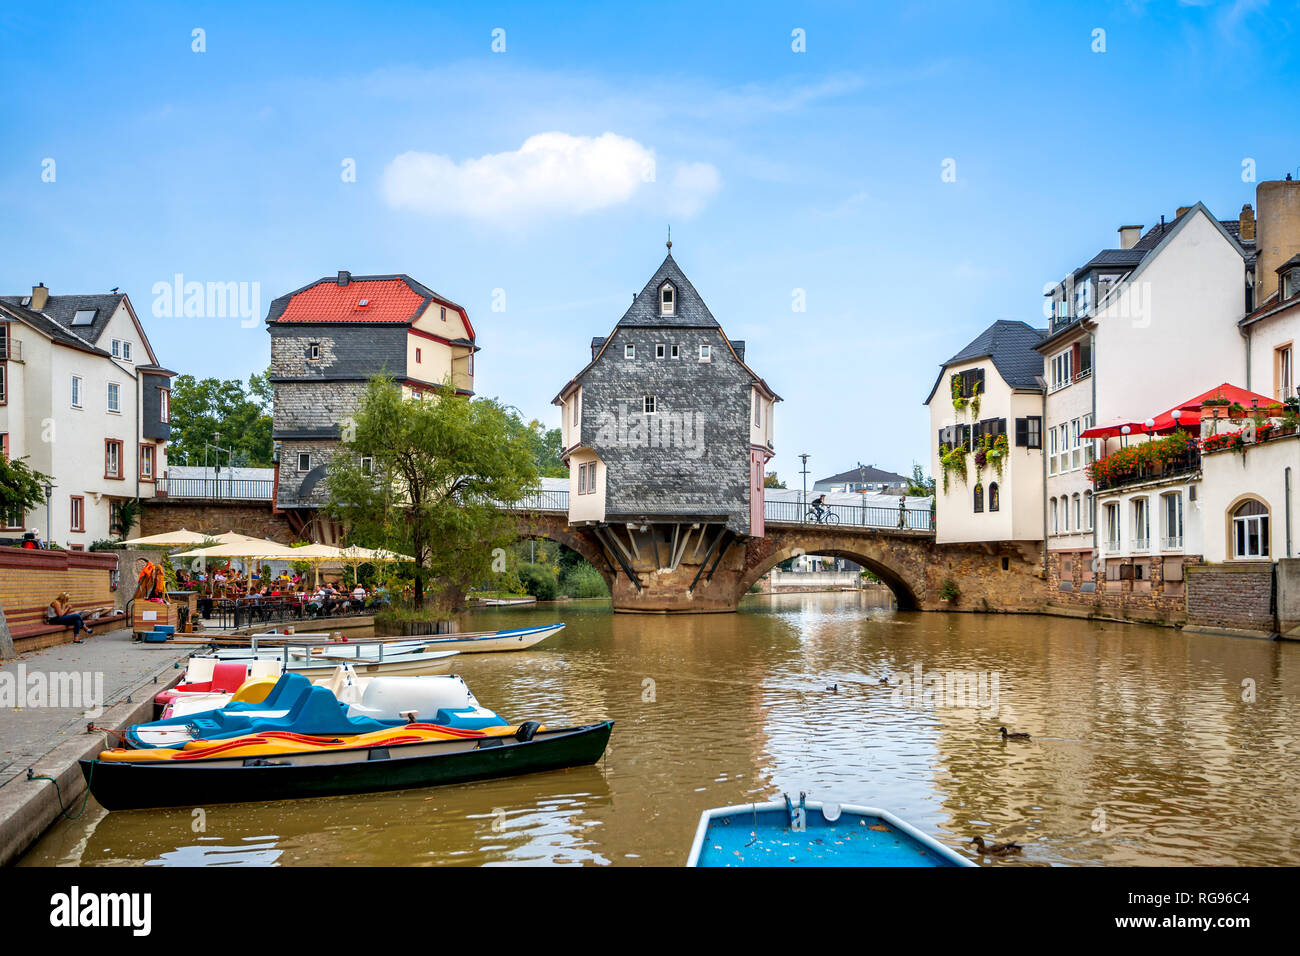 Germany, Rhineland-Palatinate, Bad Kreuznach, Old town, Old Nahe bridge with Bridge houses Stock Photo